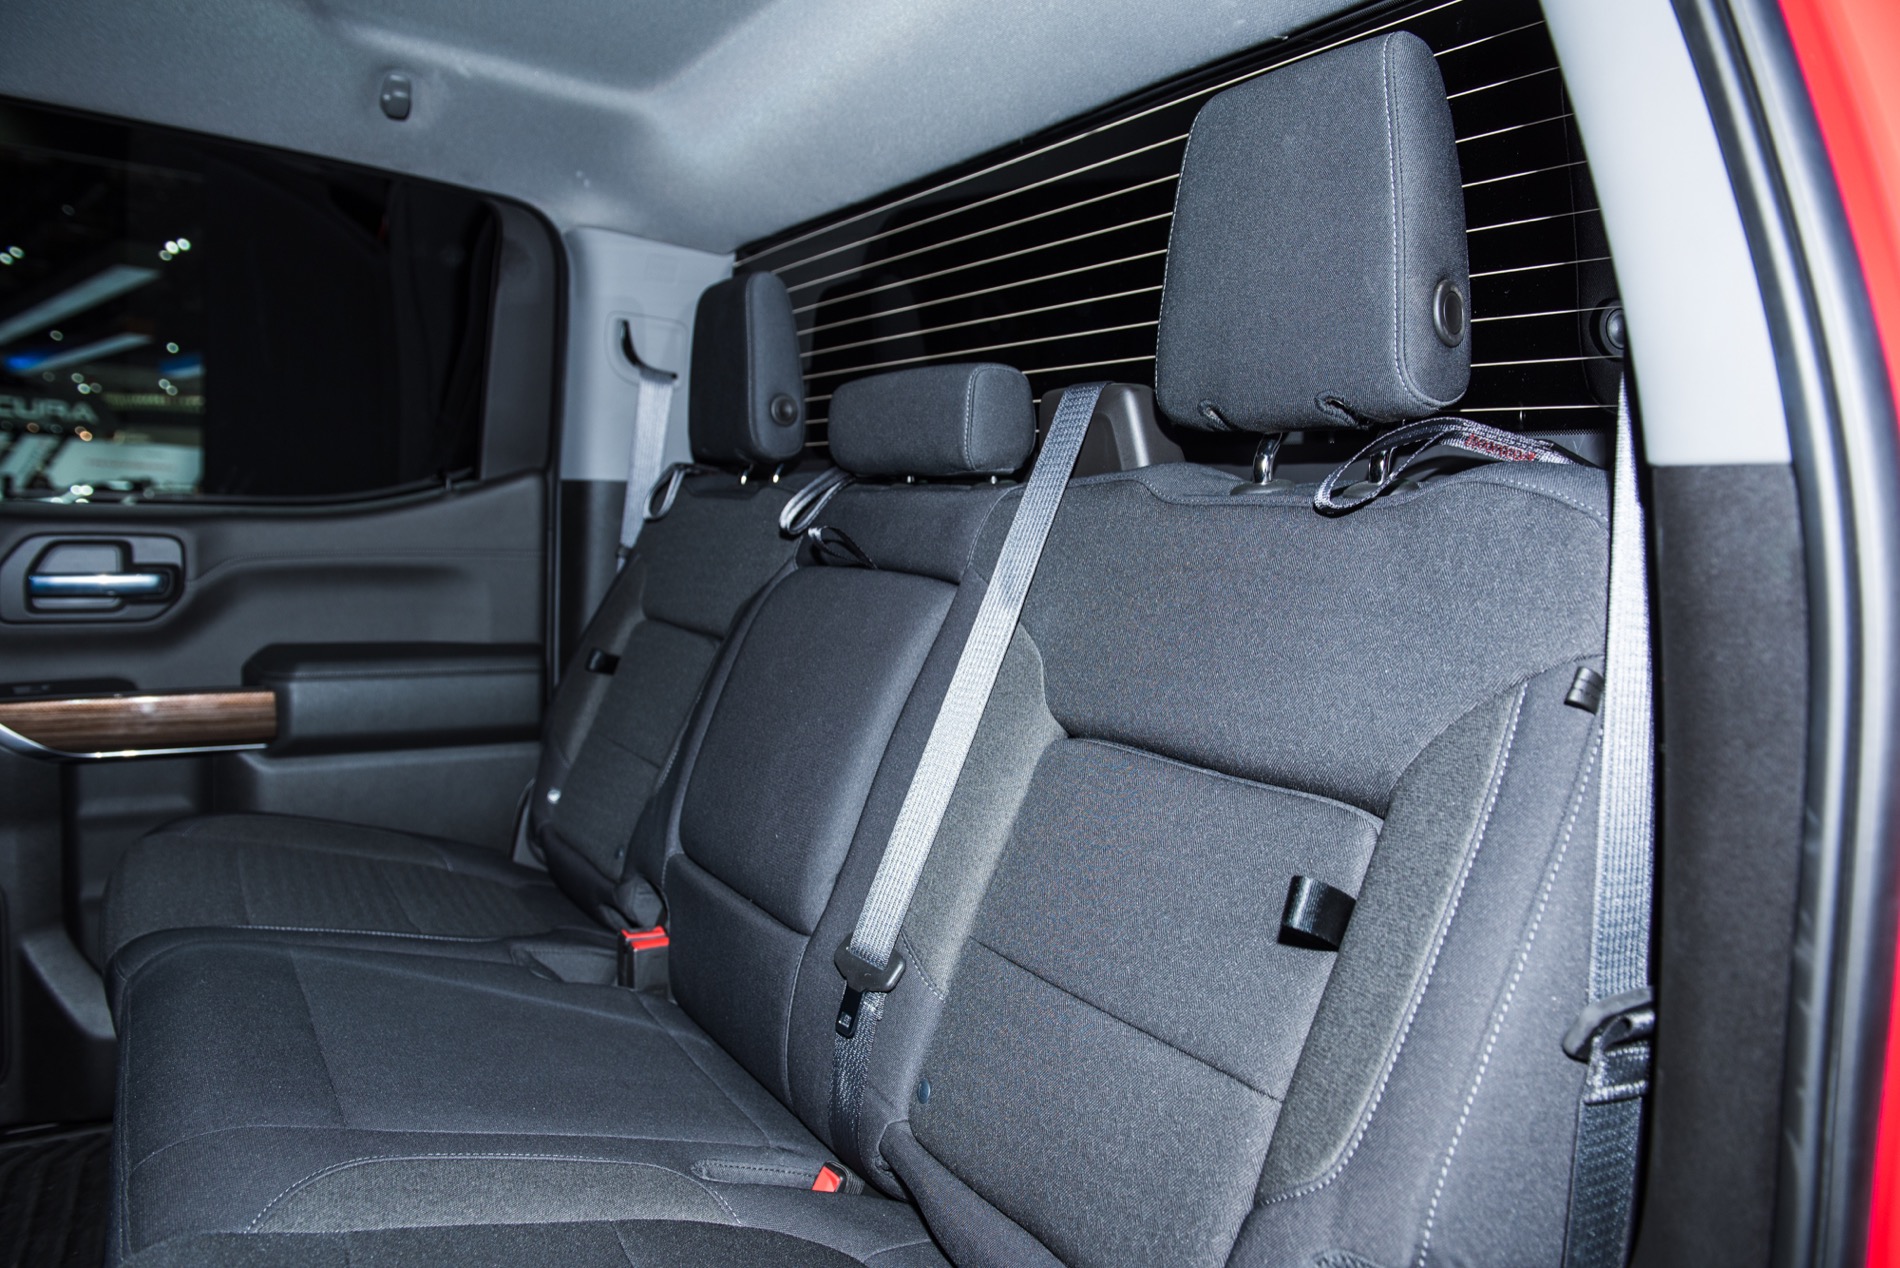 2019 Silverado Interior Features Storage Bins In Rear Seatbacks | GM Chevy Silverado Extended Cab Rear Seat Fold Down